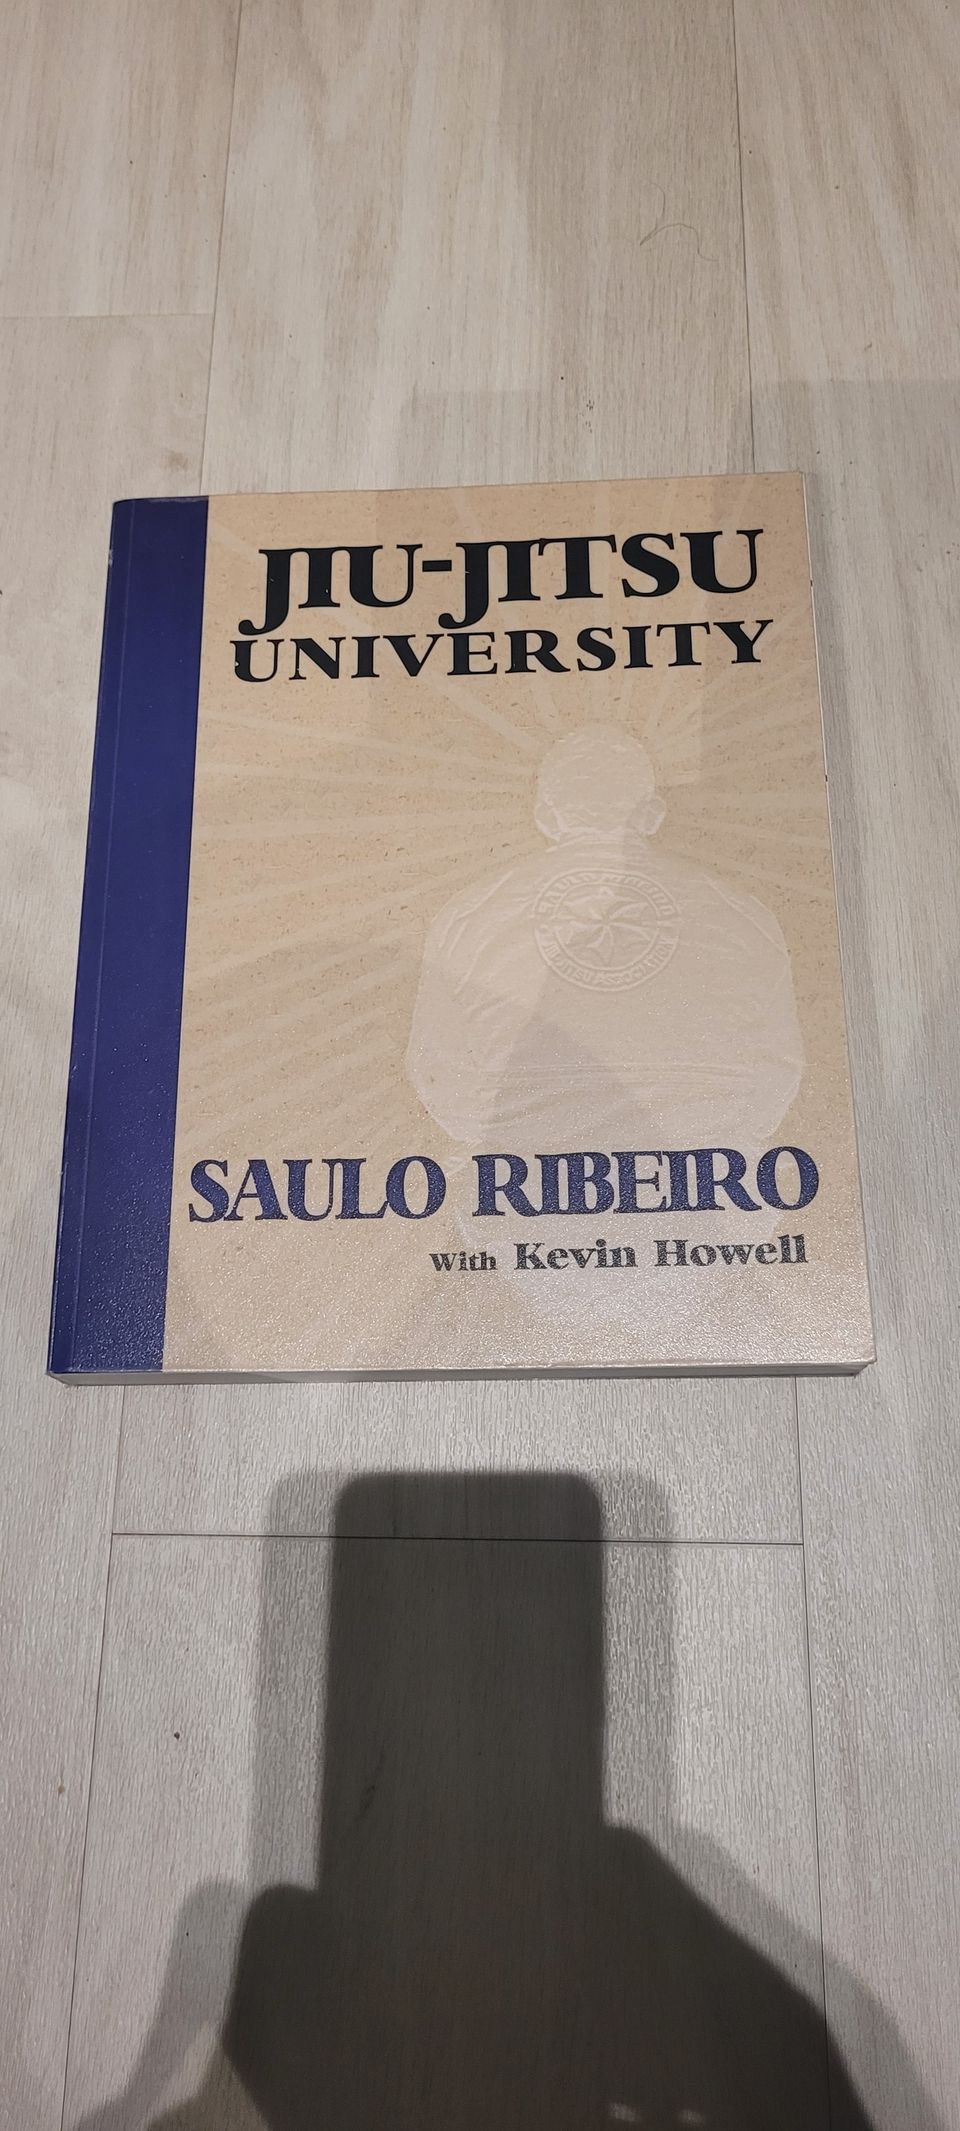 Jiu-jitsu university - Saulo Ribeiro